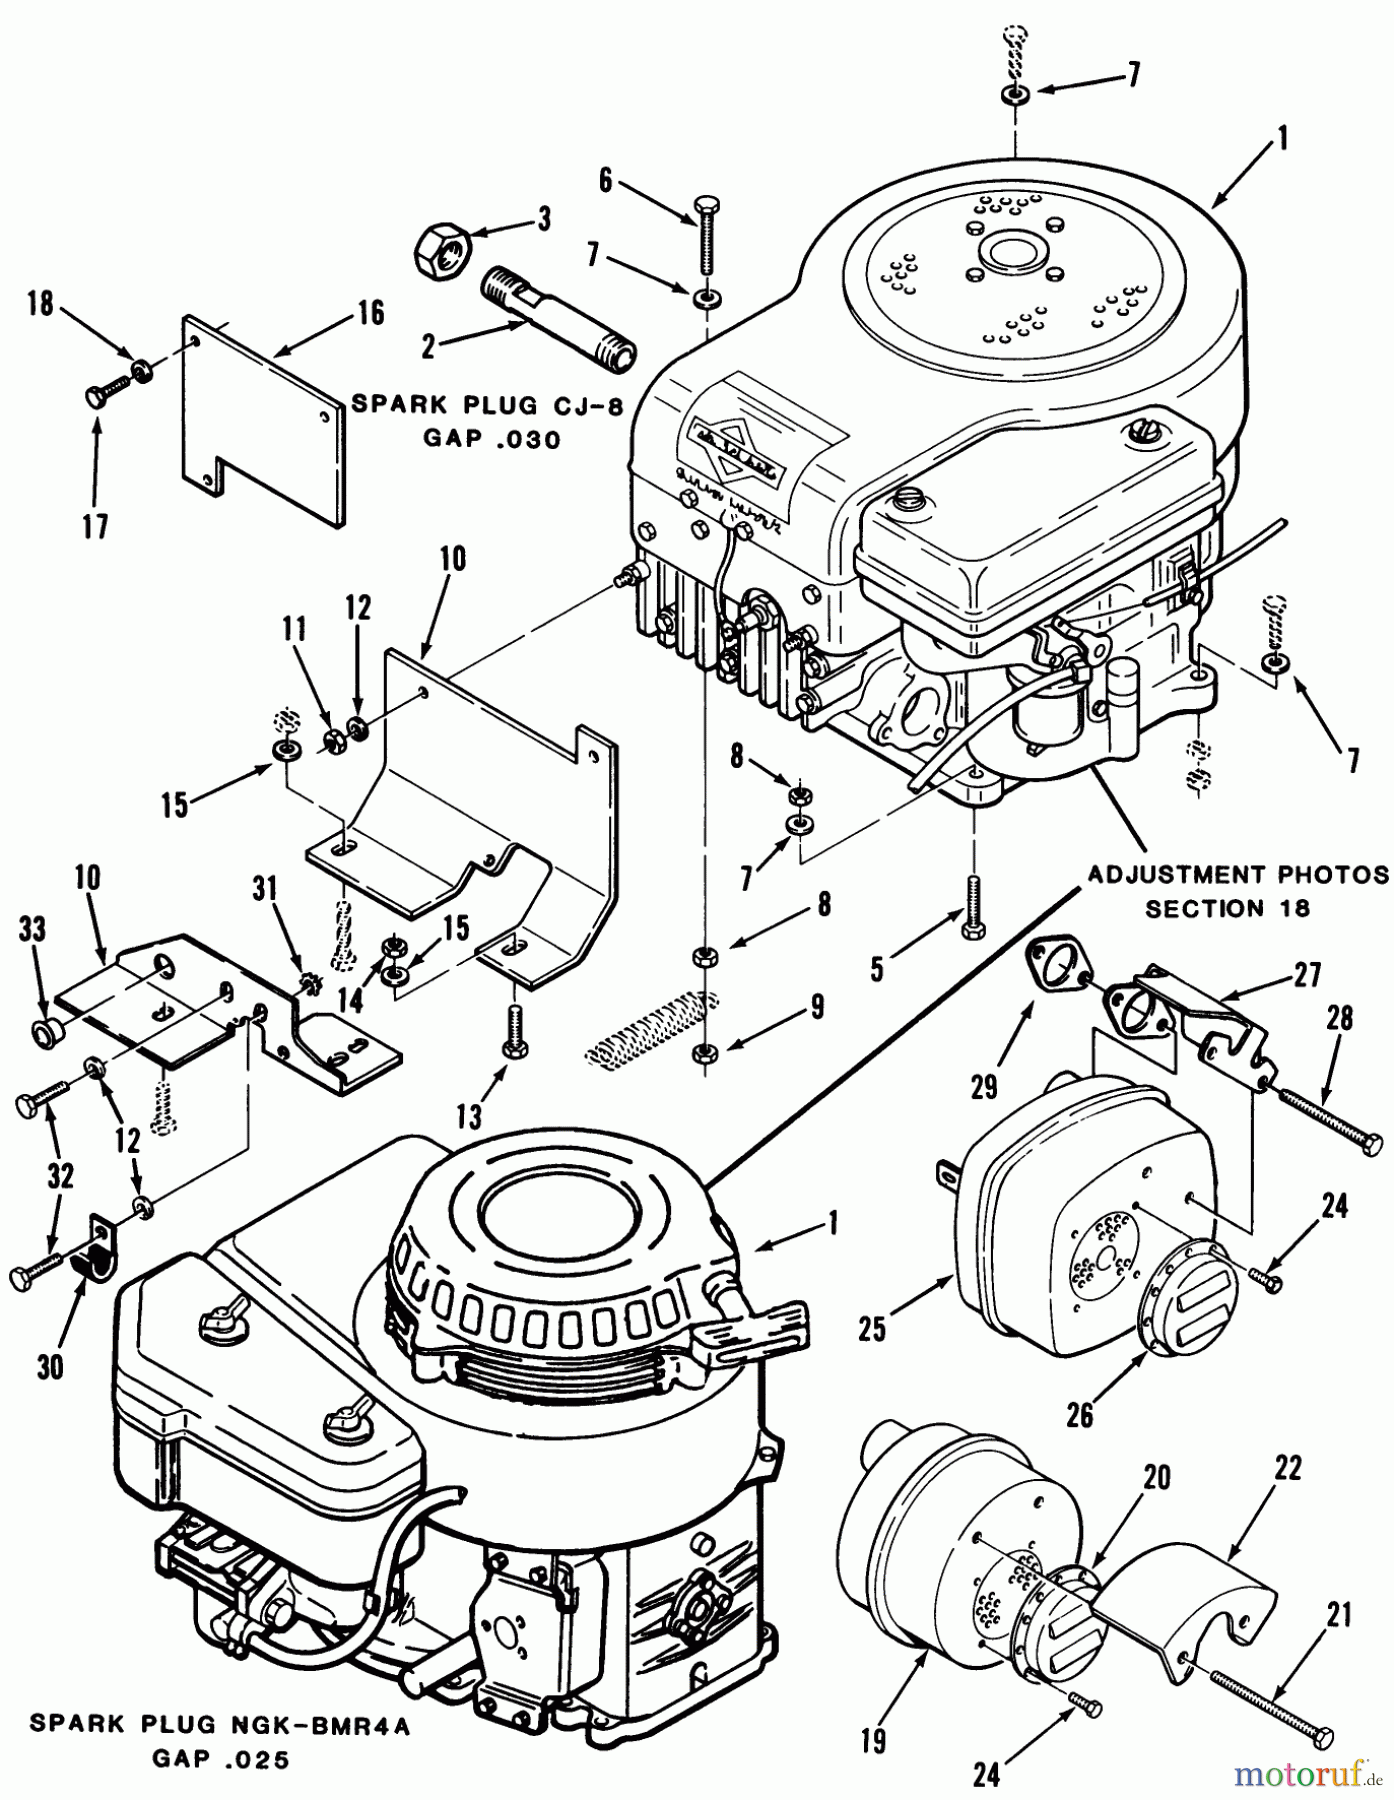  Toro Neu Mowers, Rear-Engine Rider C3-12K501 (112-C) - Toro 112-C Rear Engine Rider, 1987 ENGINES